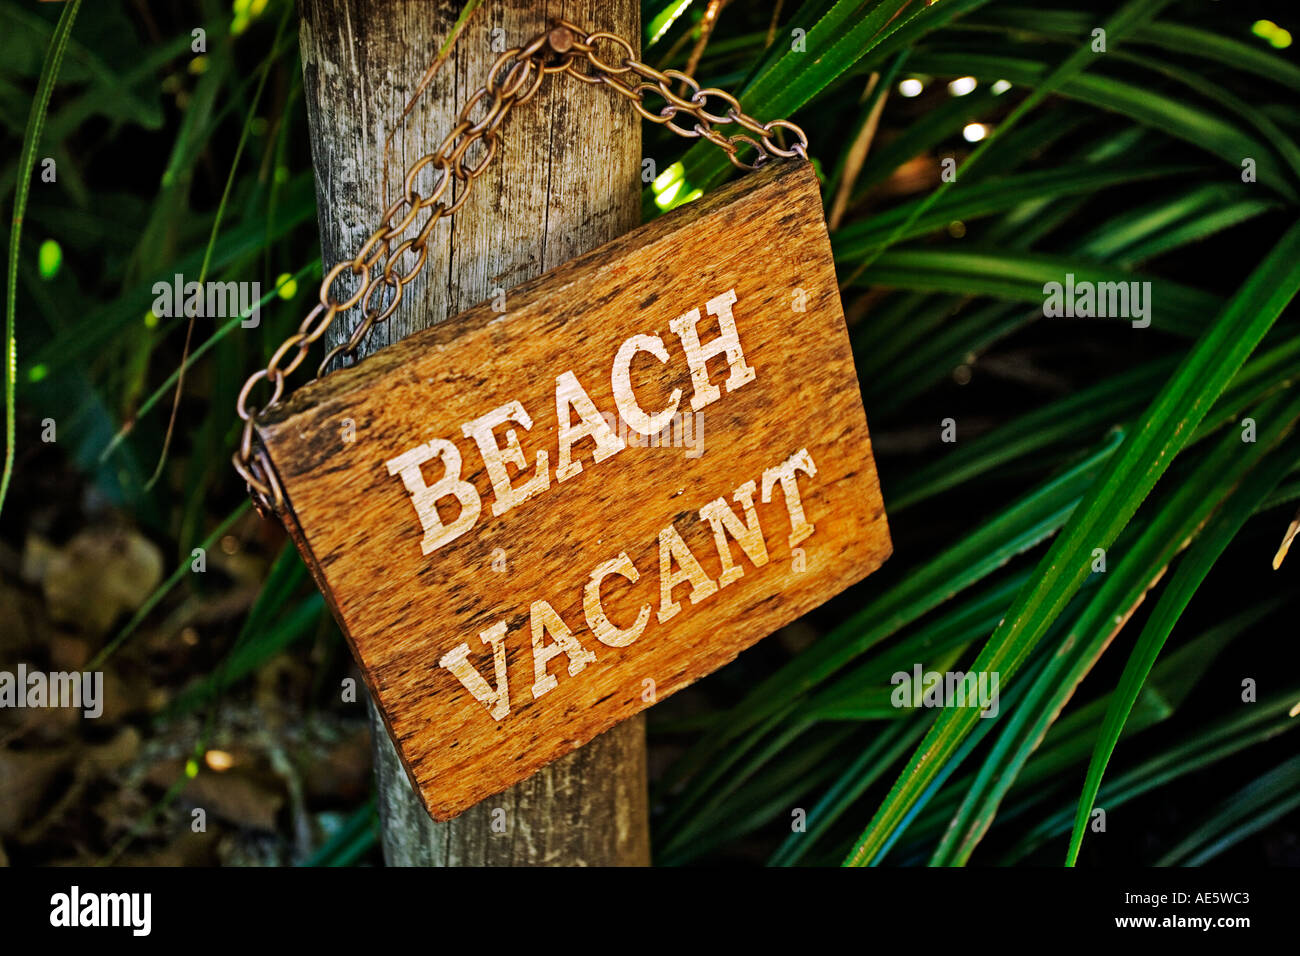 Vacance plage signe occupé sur la plage exclusive pour assurer une complète intimité intellectuelle a annoncé Fregate Island Seychelles Banque D'Images